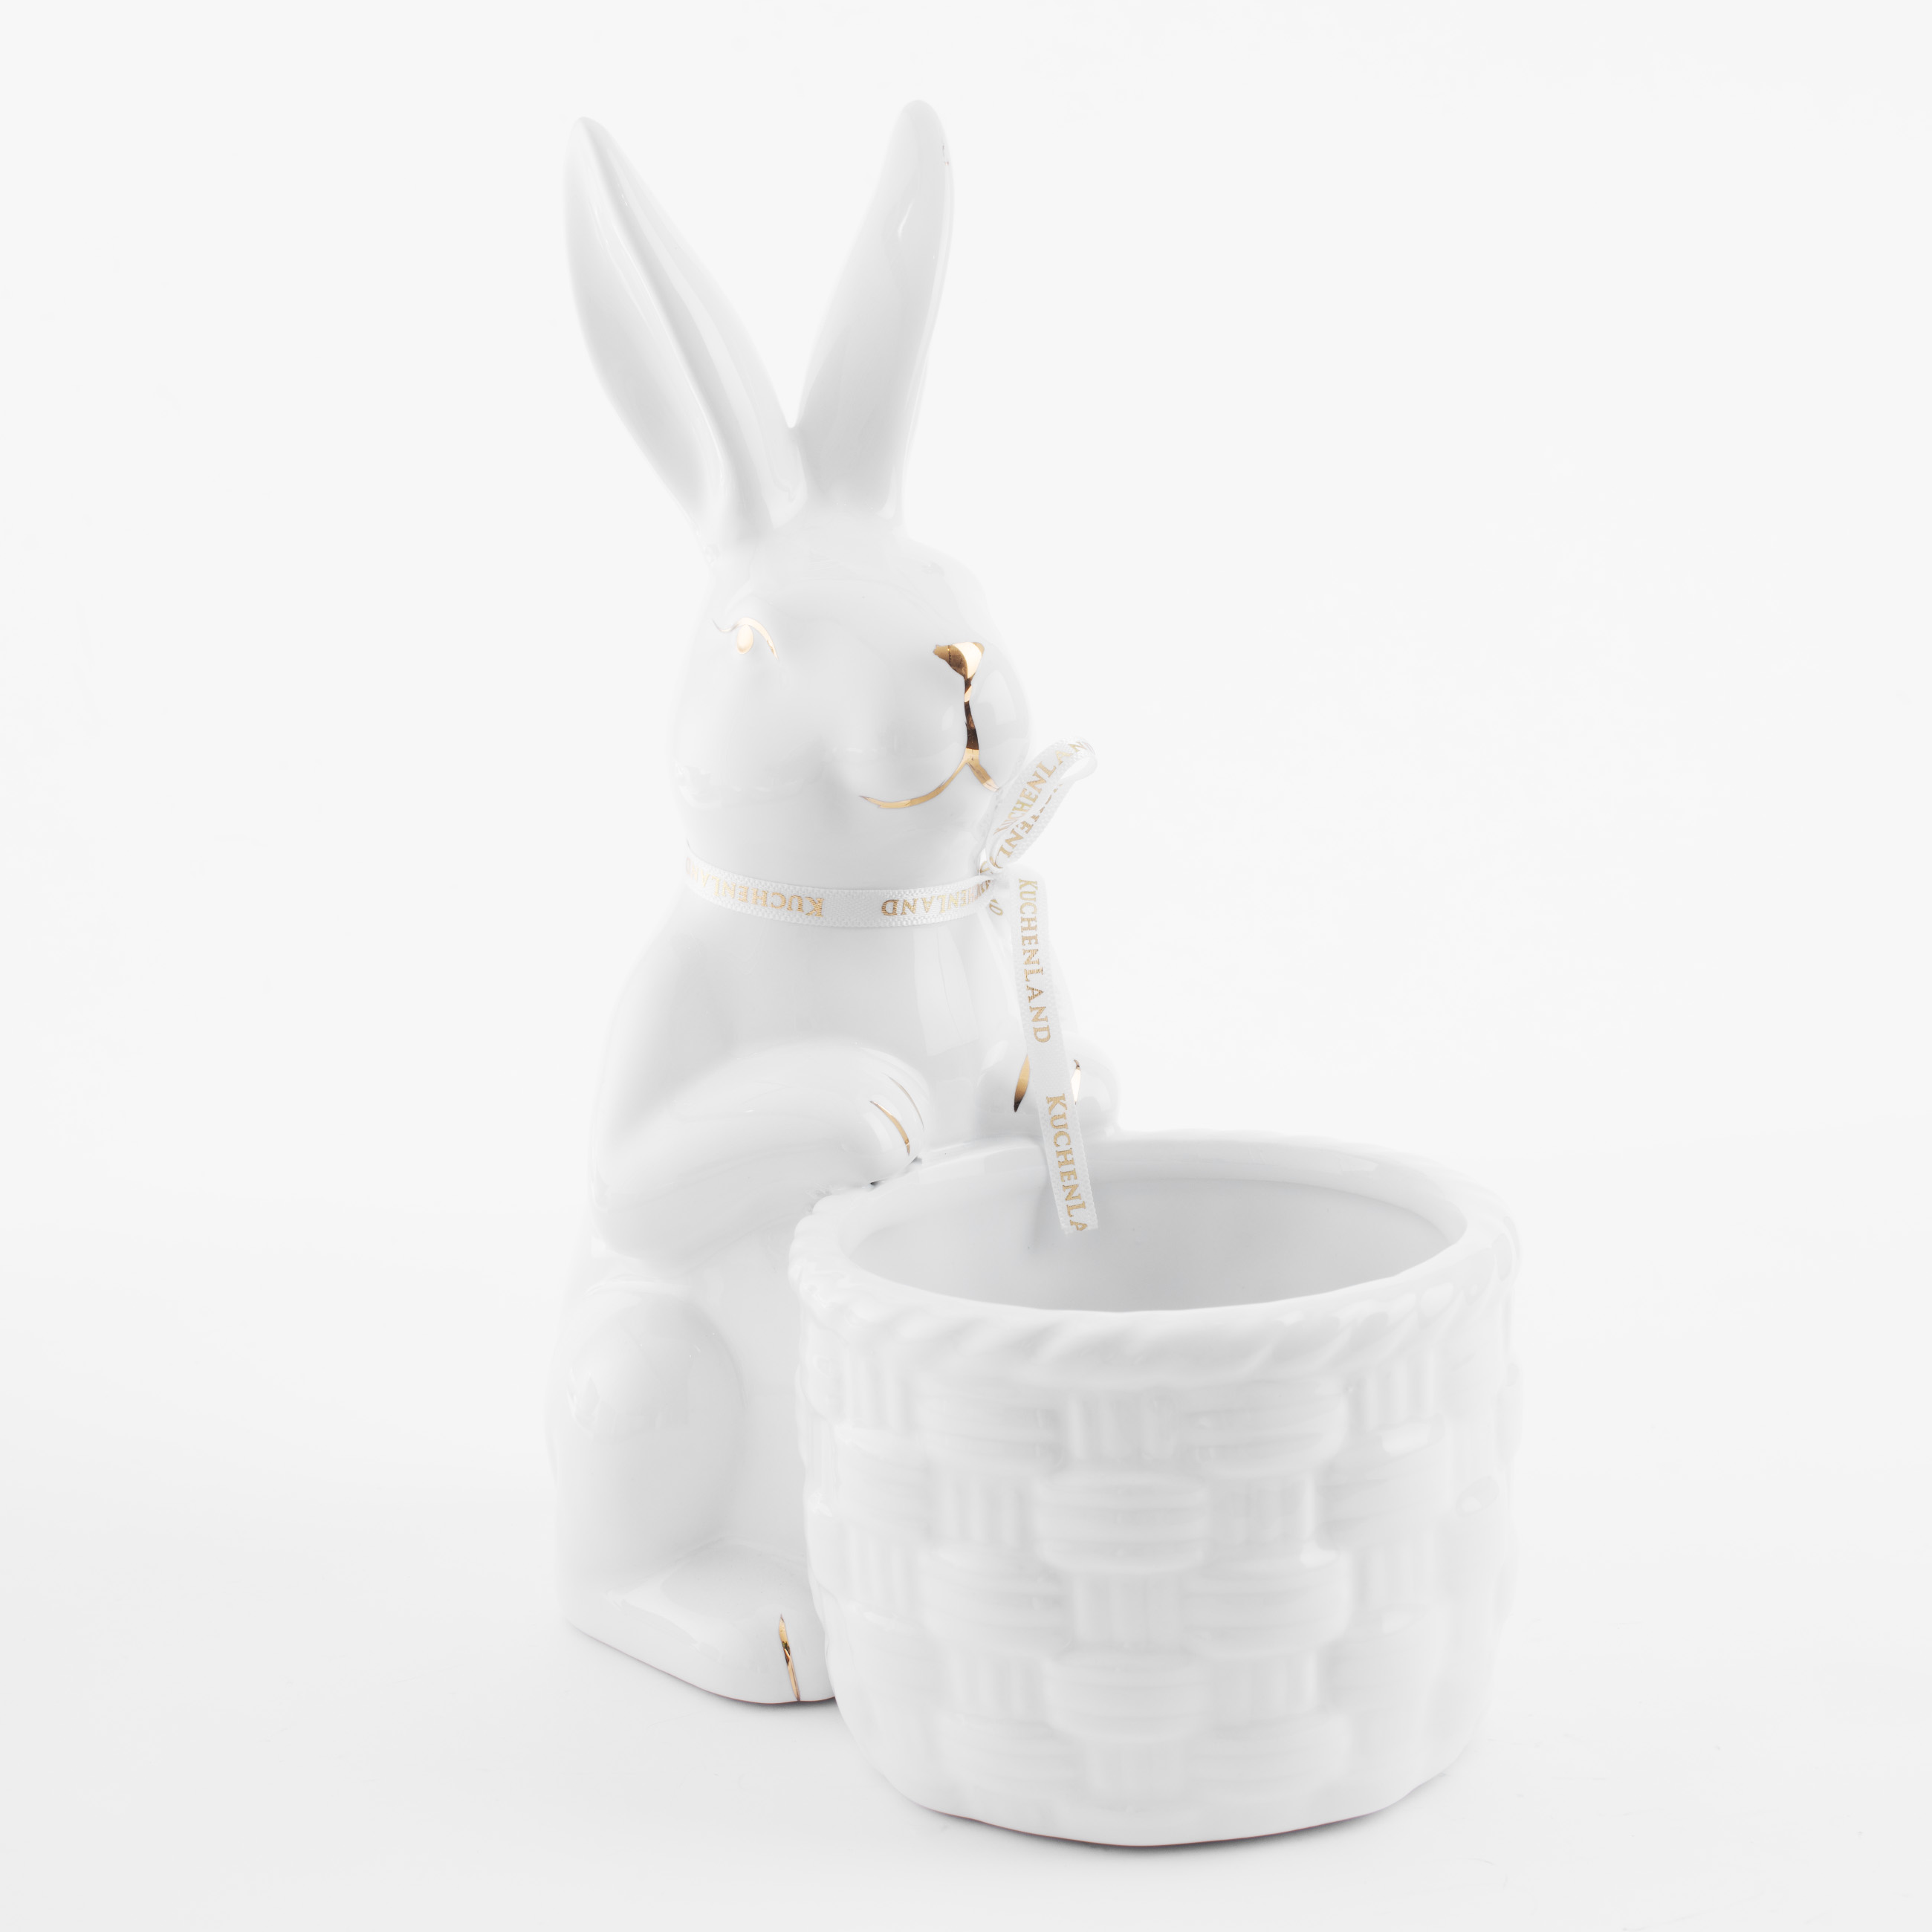 Конфетница, 18x23 см, керамика, бело-золотистая, Кролик с плетенной корзиной, Easter gold изображение № 3